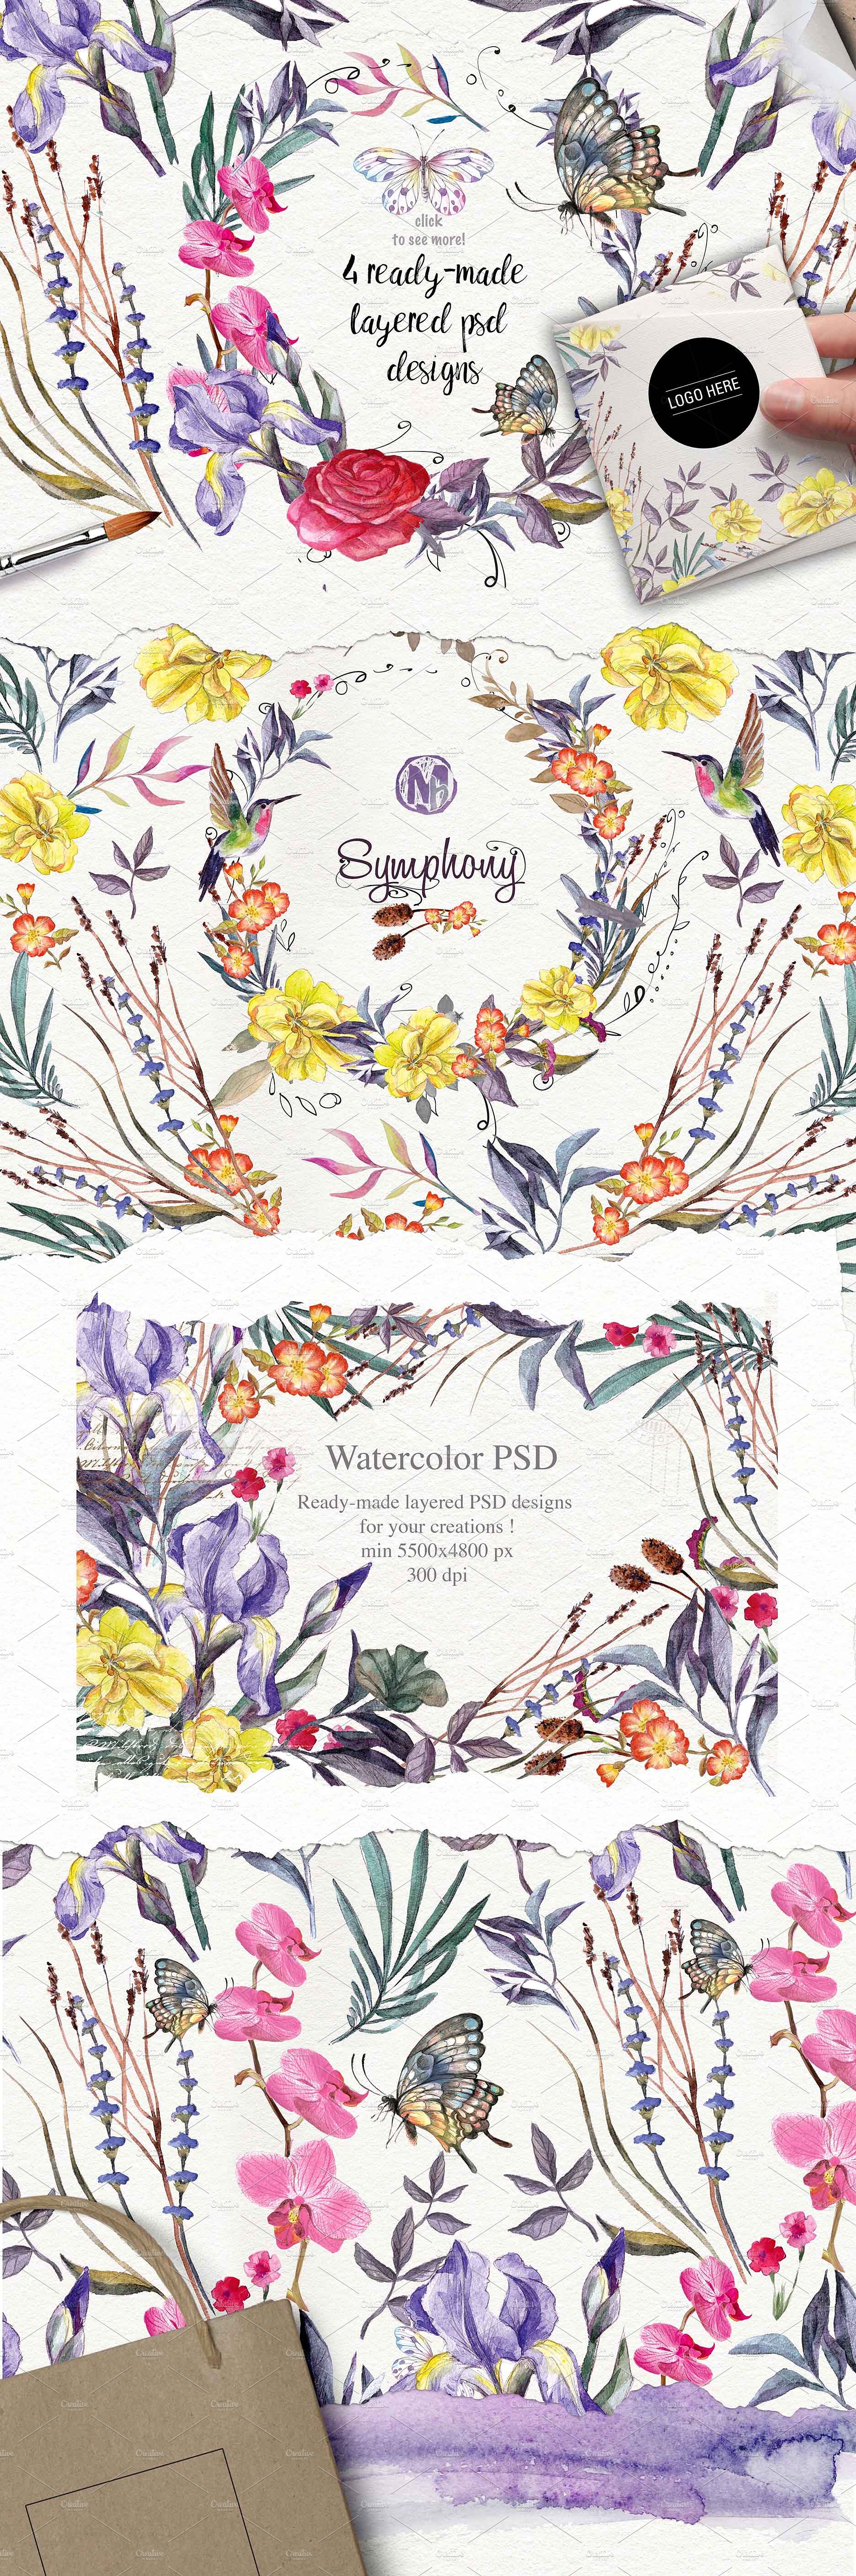 手绘水彩花卉植物设计素材Wildflowers pack 7